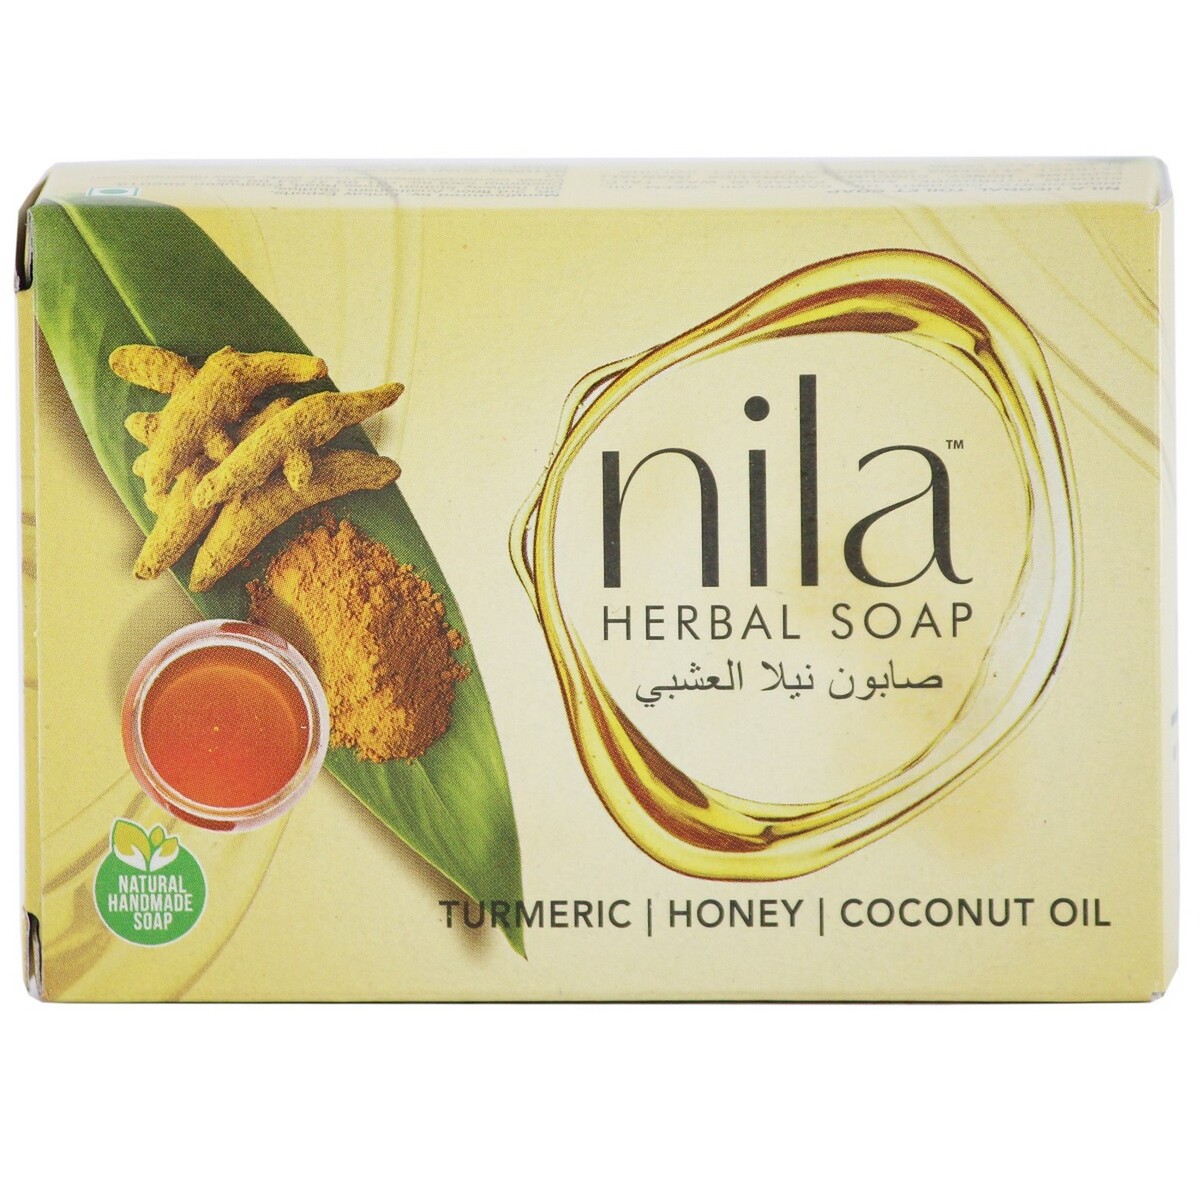 Nila Herbal Soap 75g